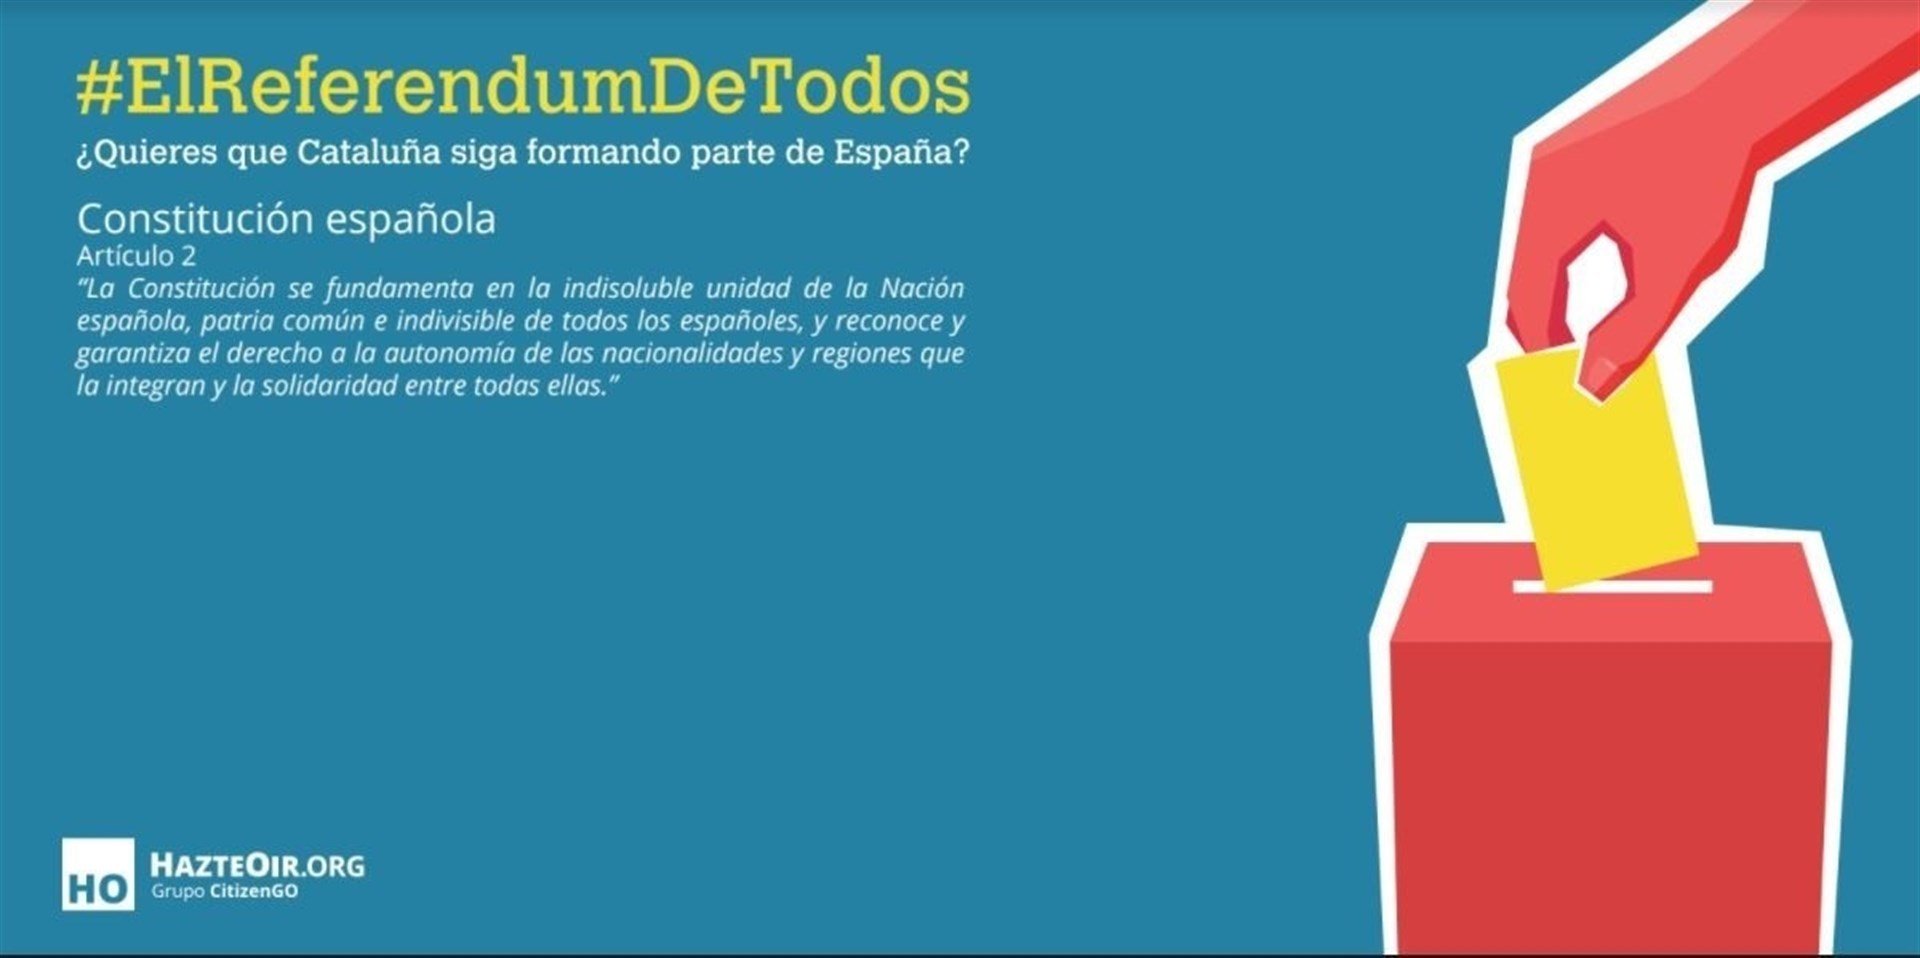 HazteOir convoca una "parodia" de referéndum en Madrid para votar a favor de la Constitución